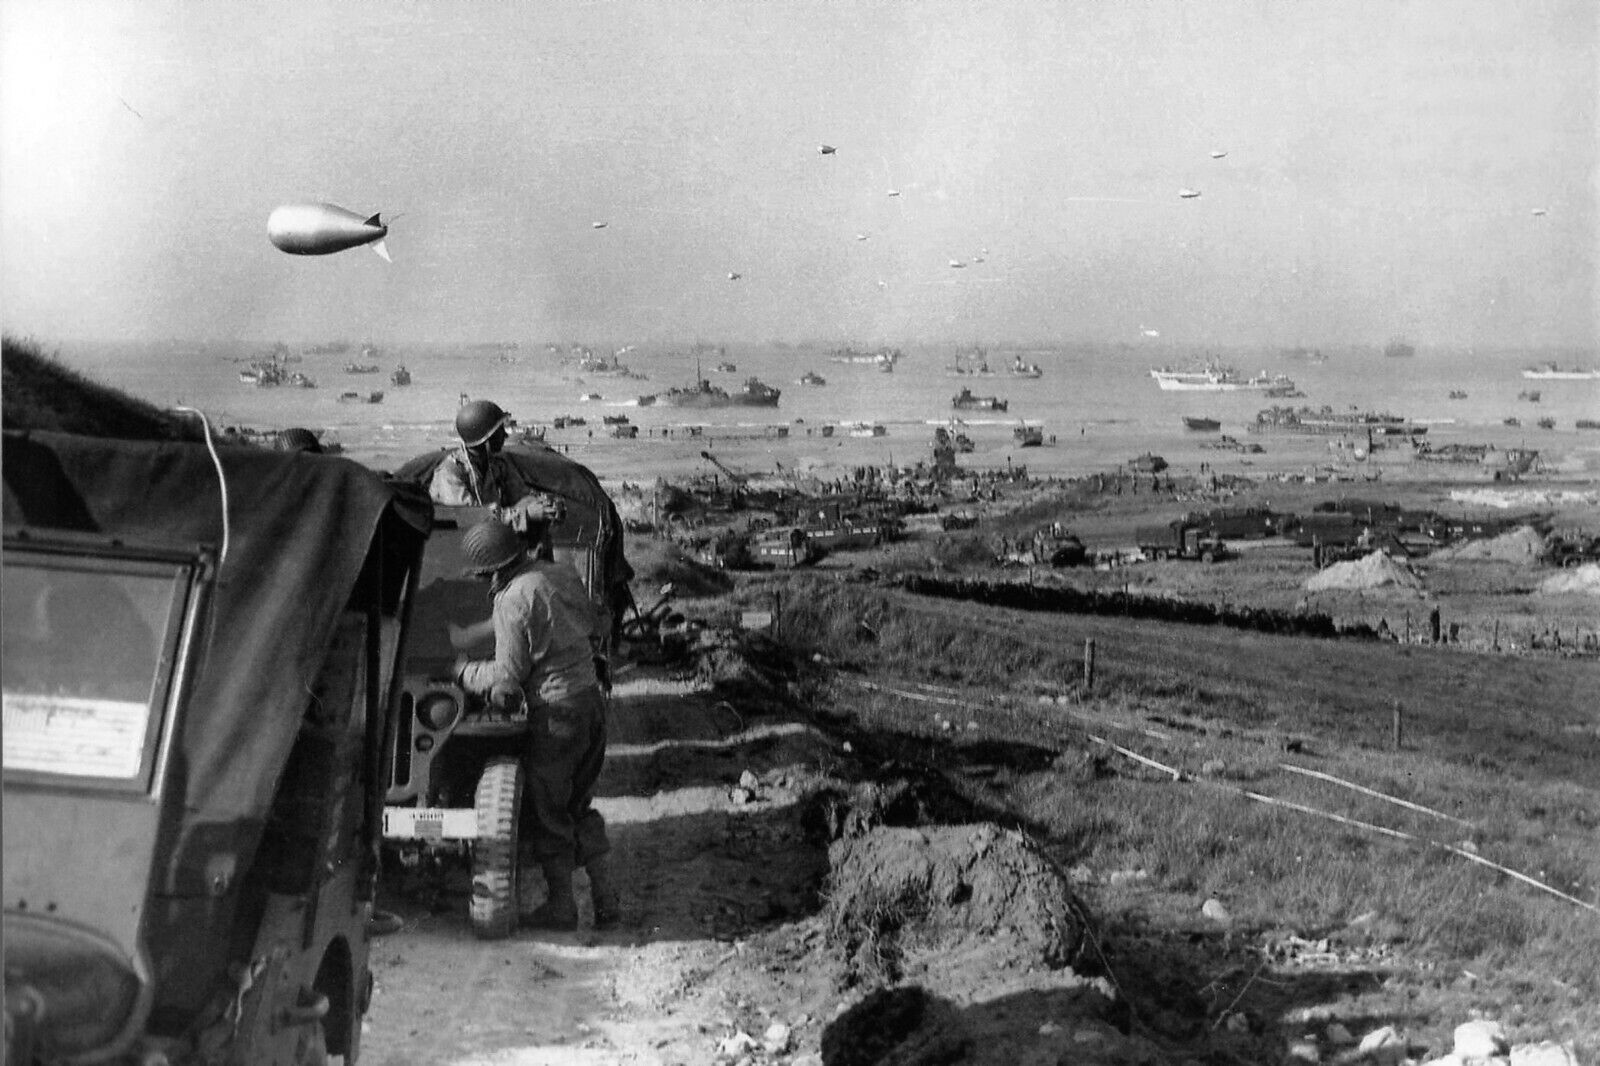 WW2 - 20x15 Photo - Utah Beach June 9, 1944